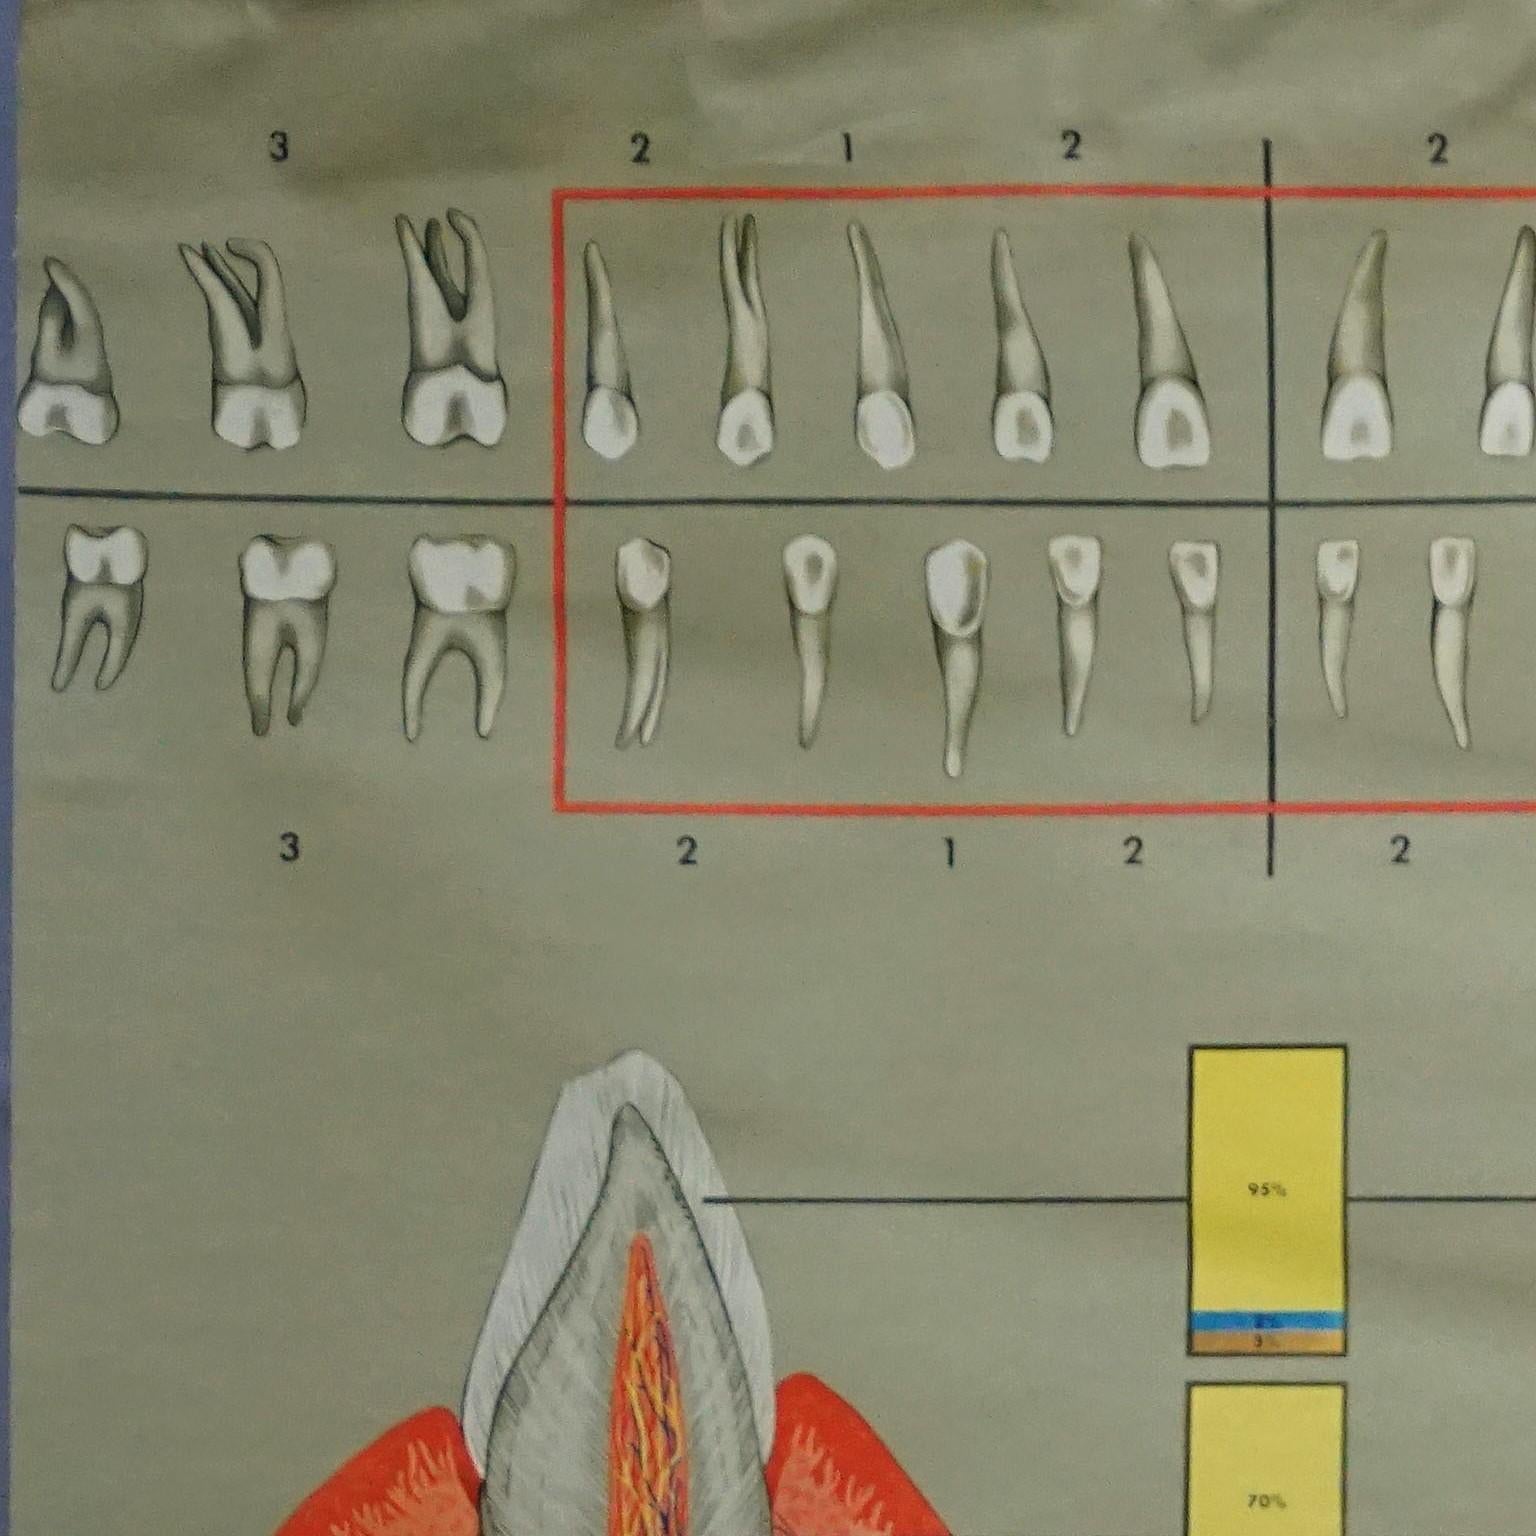 Ein medizinisches Poster im Vintage-Stil mit aufrollbarer Wandtafel, die gesunde Zähne und tägliche Pflege zeigt - Teil 7 der Serie Human Body von Hagemann Düsseldorf. Bunter Druck auf leinwandverstärktem Papier.
Abmessungen:
Breite 164,50 cm (64,76